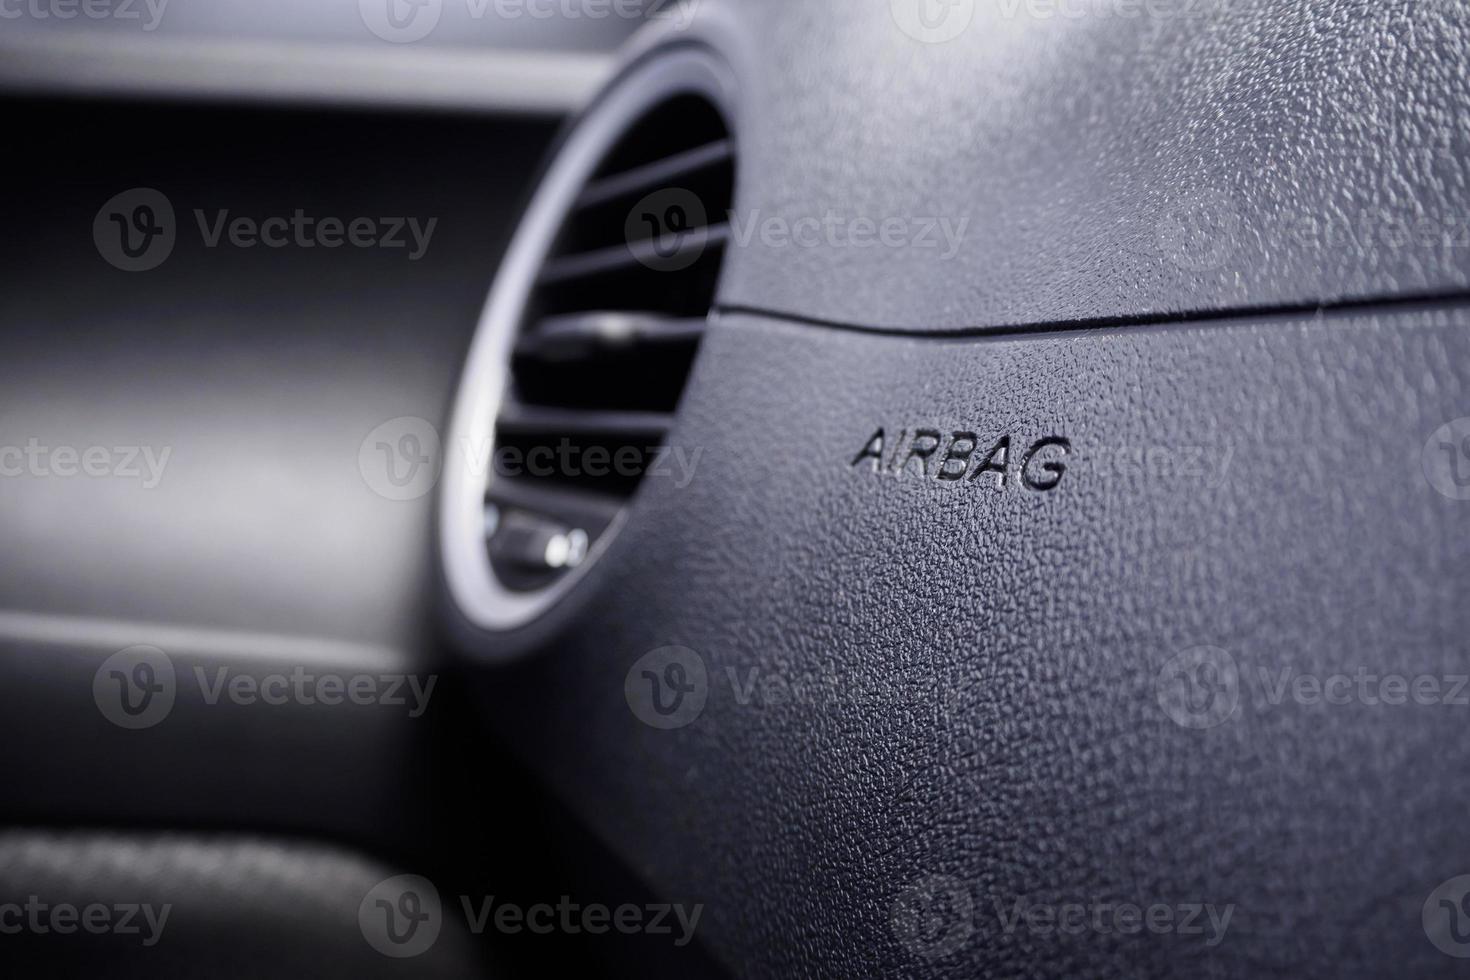 segno dell'airbag di sicurezza in macchina foto